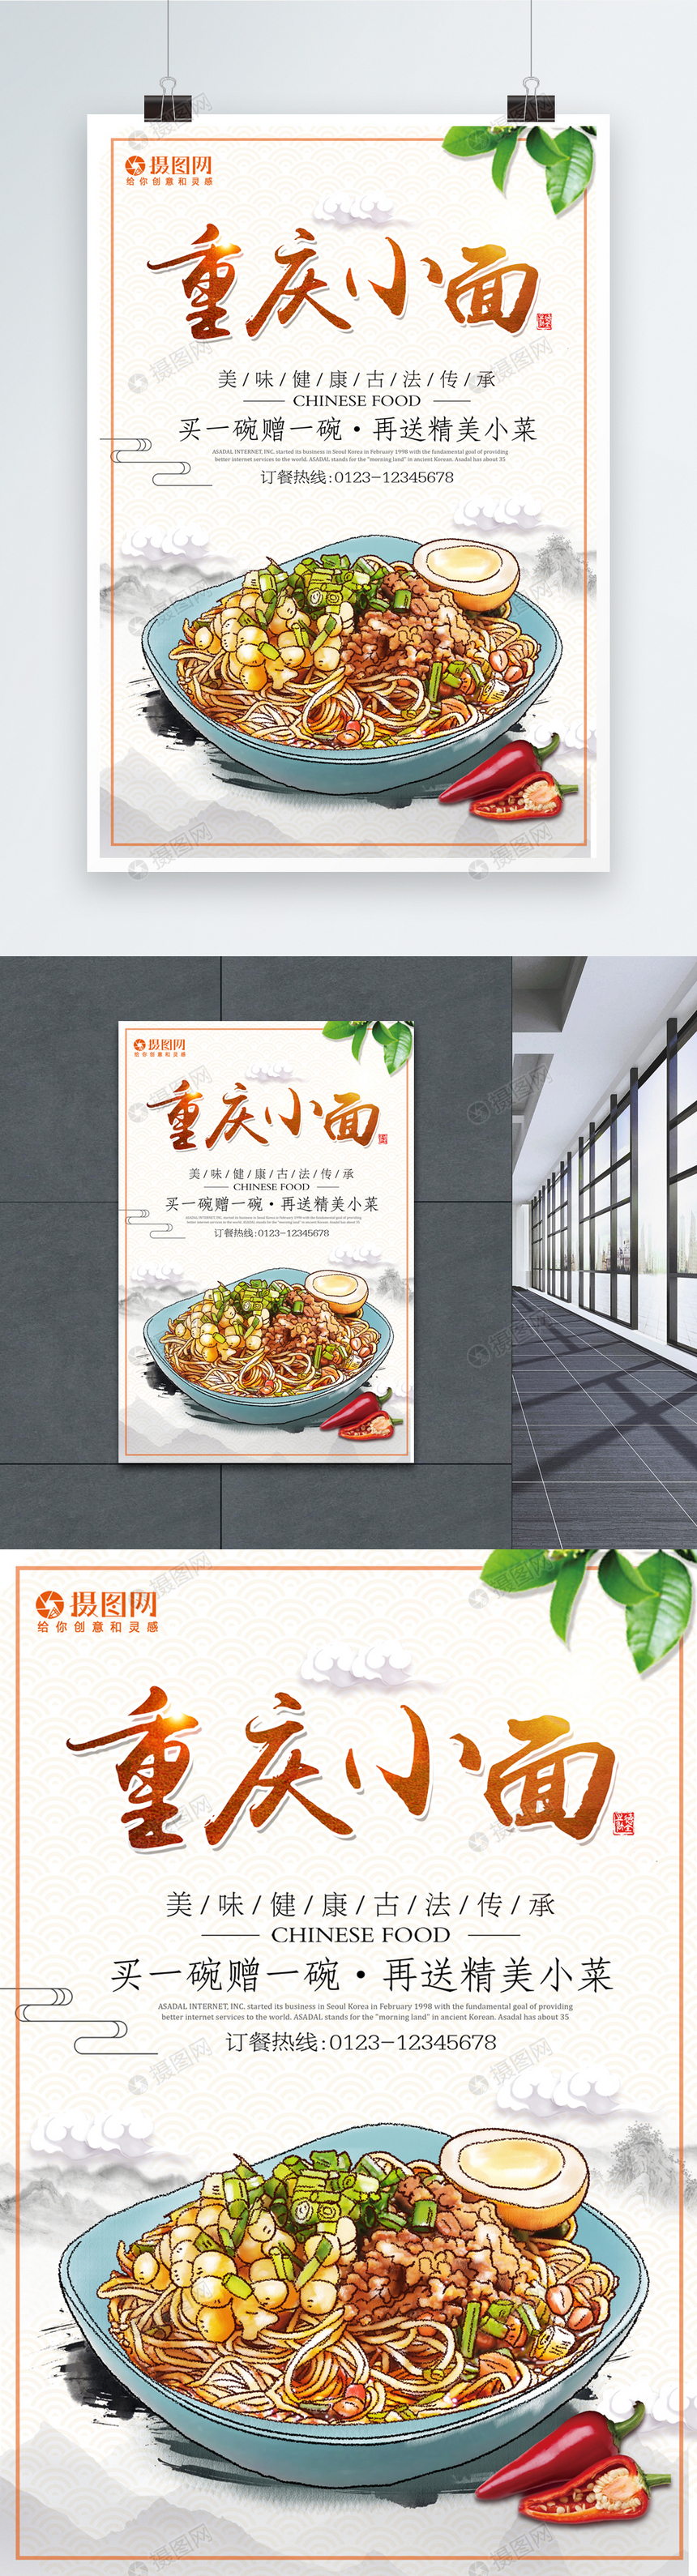 重庆小面美食宣传海报图片